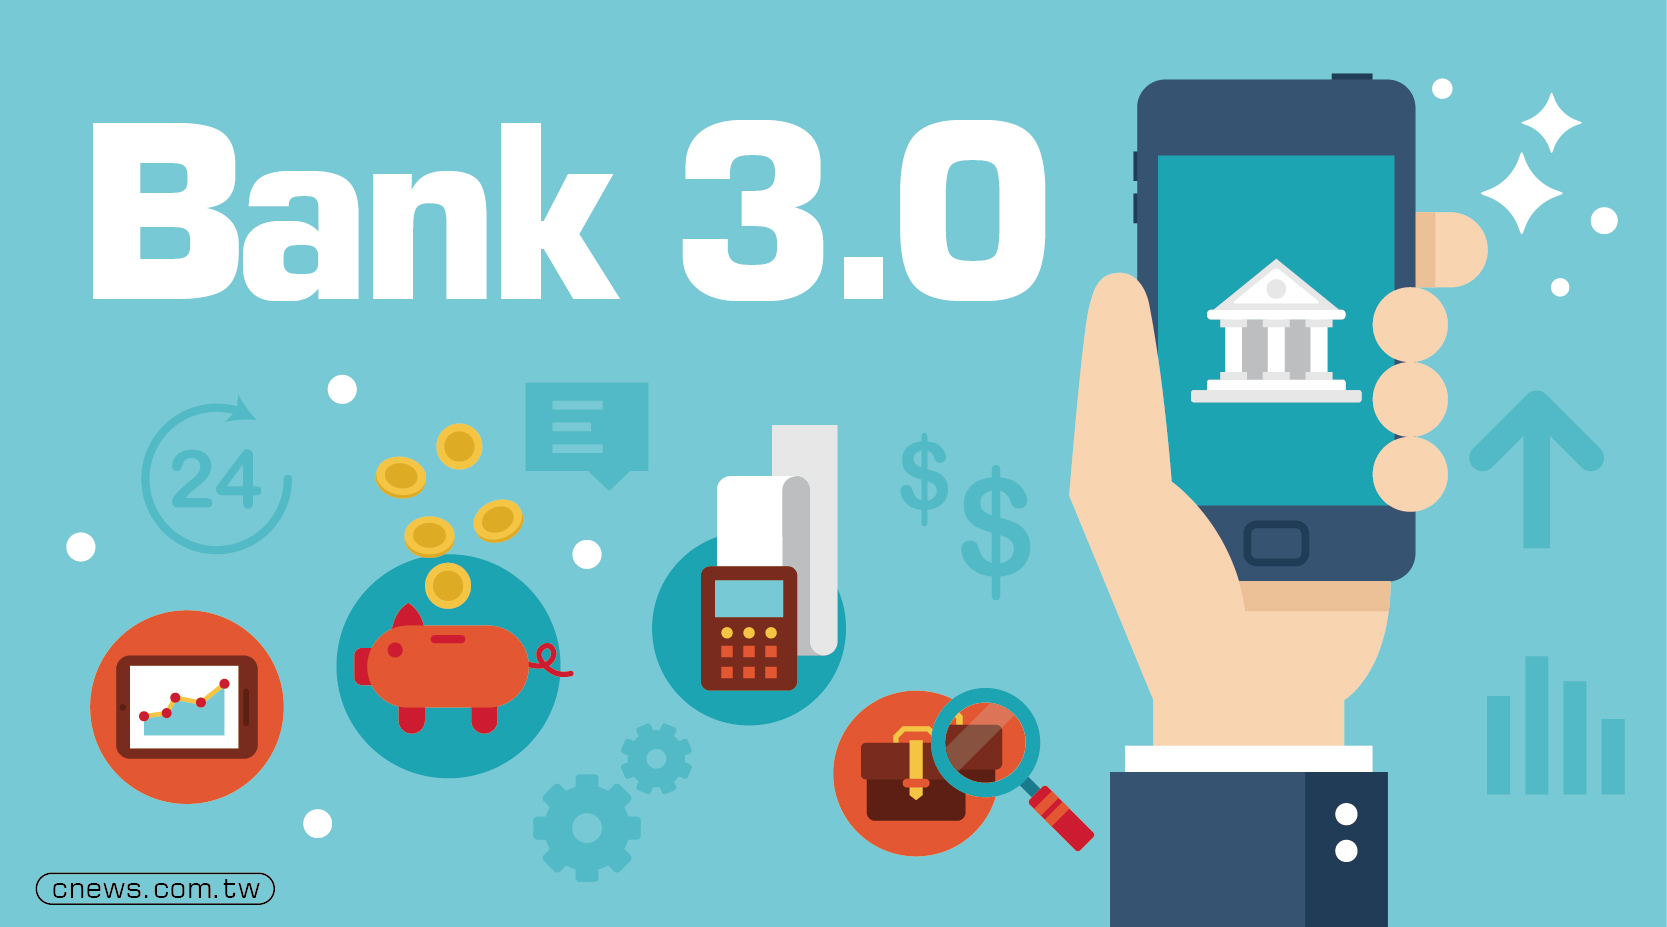 金融數位化潮流難擋  金管會啟動Bank 3.0